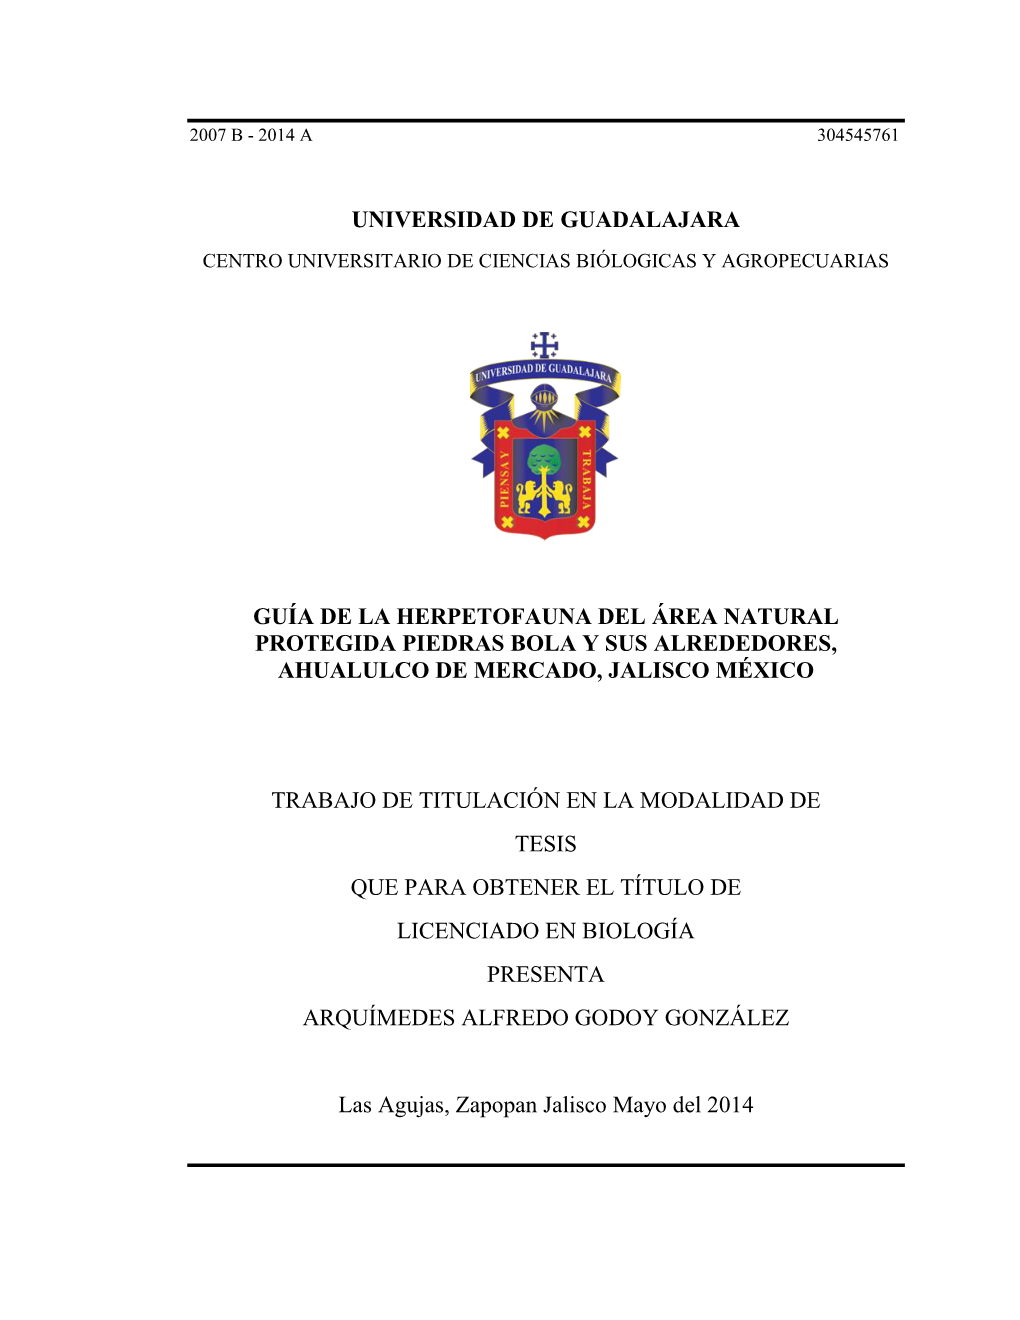 Universidad De Guadalajara Guía De La Herpetofauna